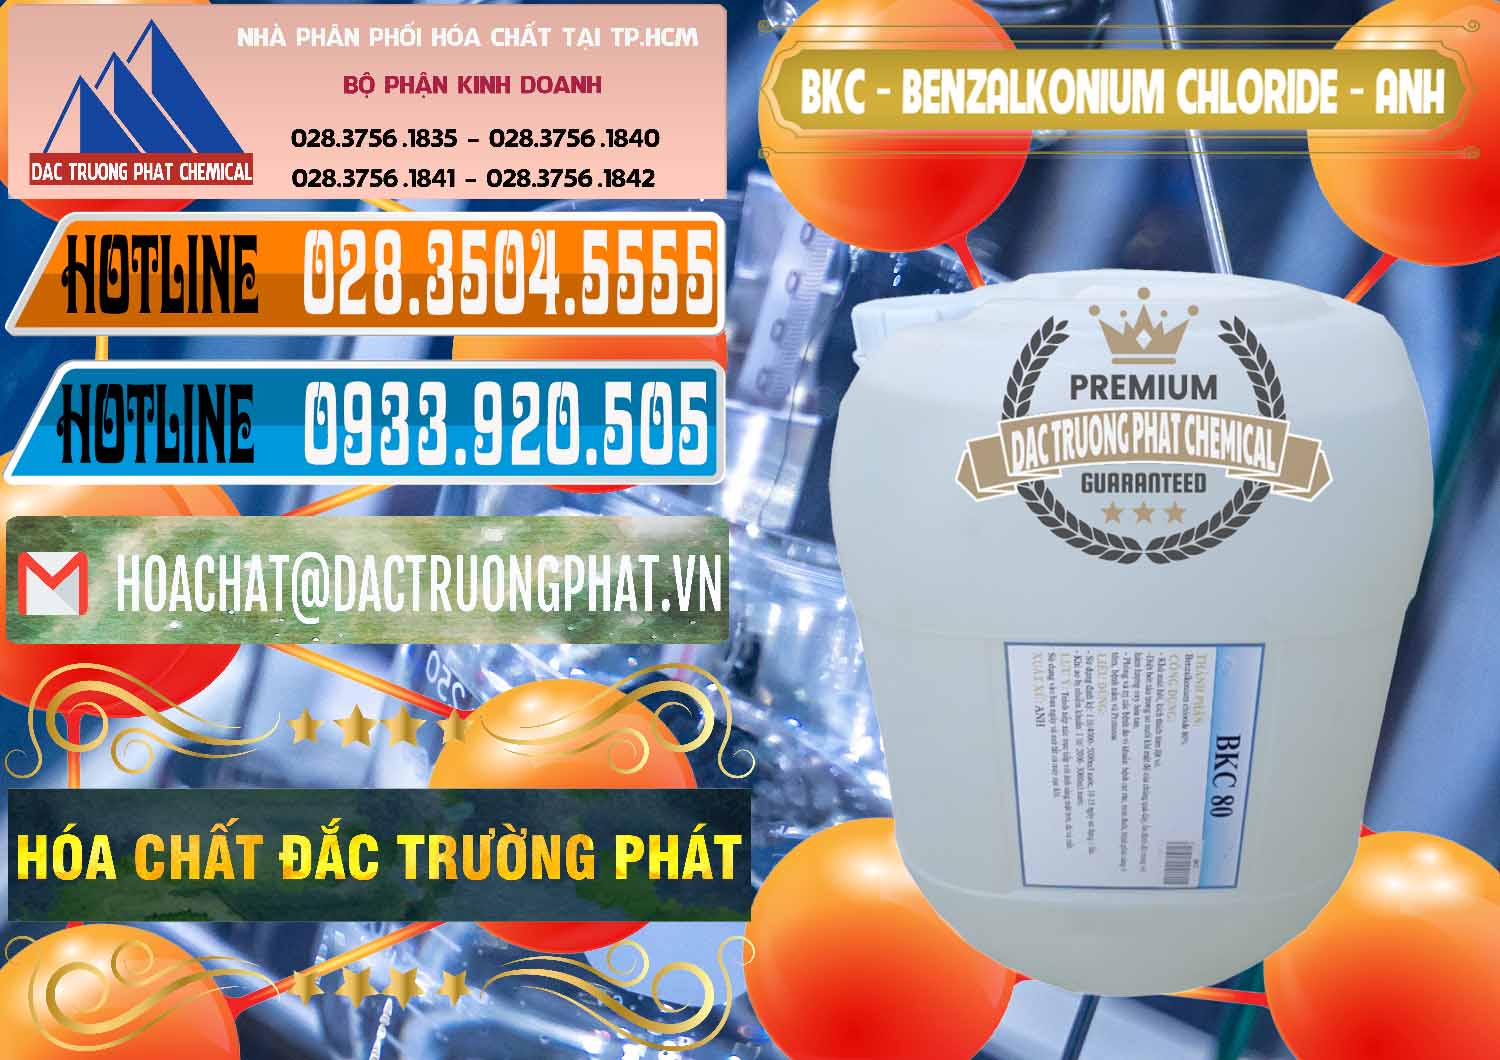 Cung ứng & bán BKC - Benzalkonium Chloride Anh Quốc Uk Kingdoms - 0415 - Đơn vị chuyên bán & cung cấp hóa chất tại TP.HCM - stmp.net